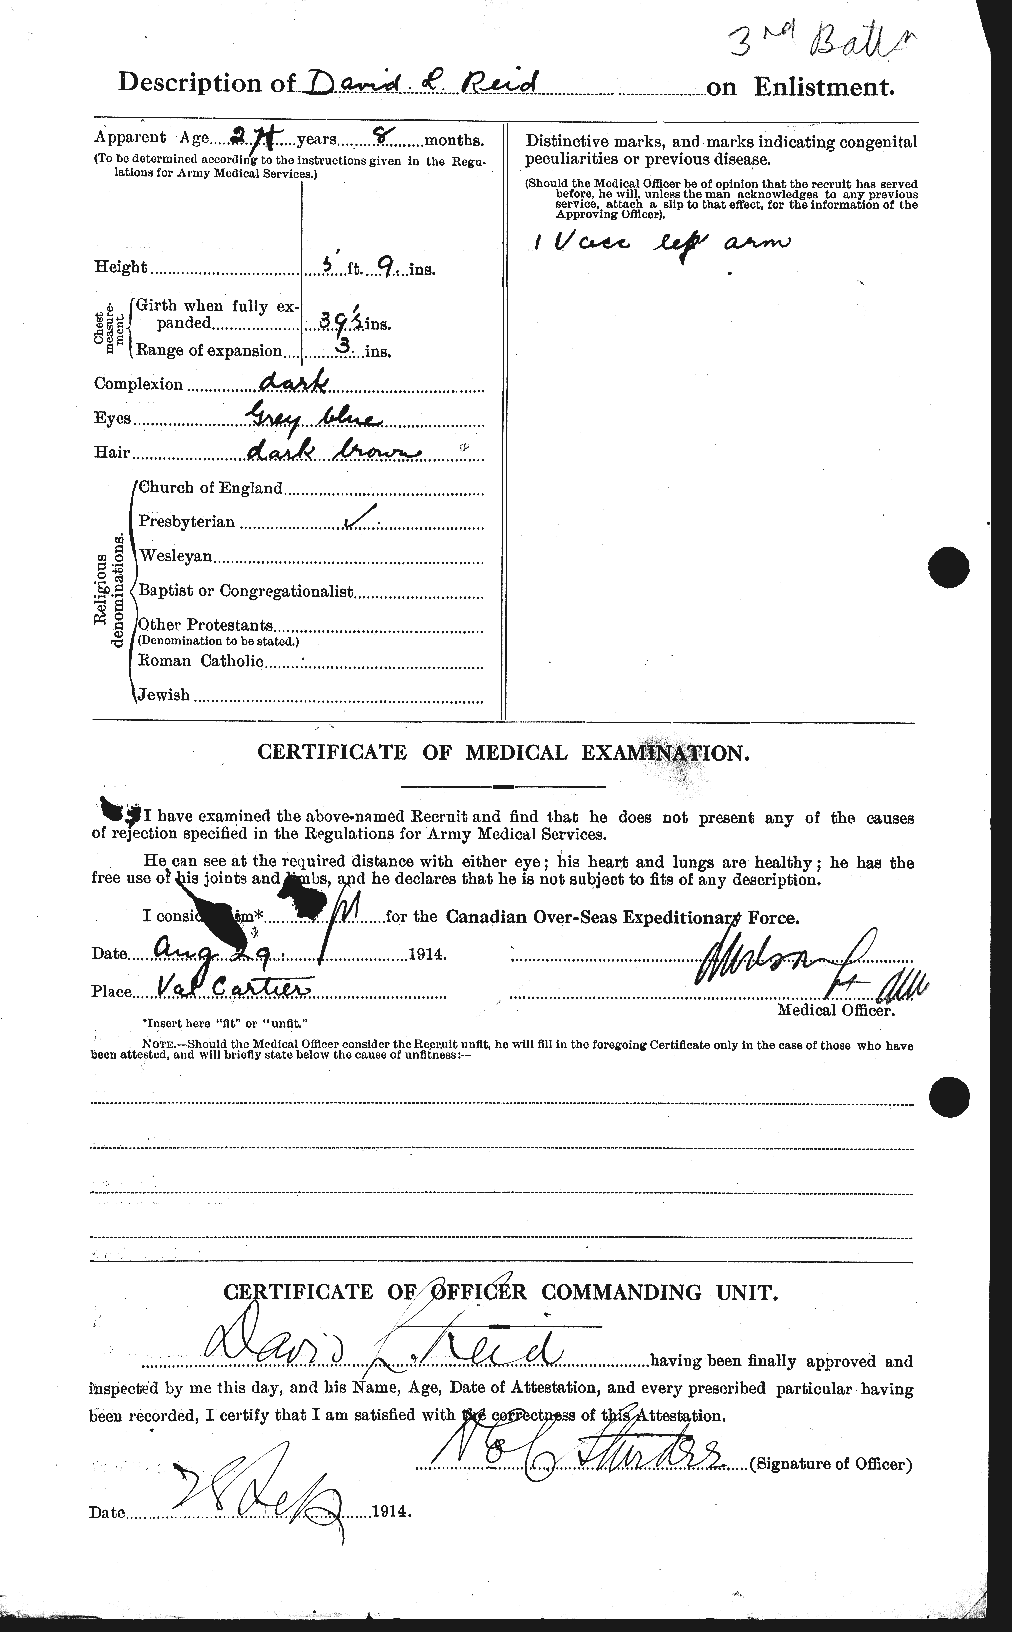 Dossiers du Personnel de la Première Guerre mondiale - CEC 598000b